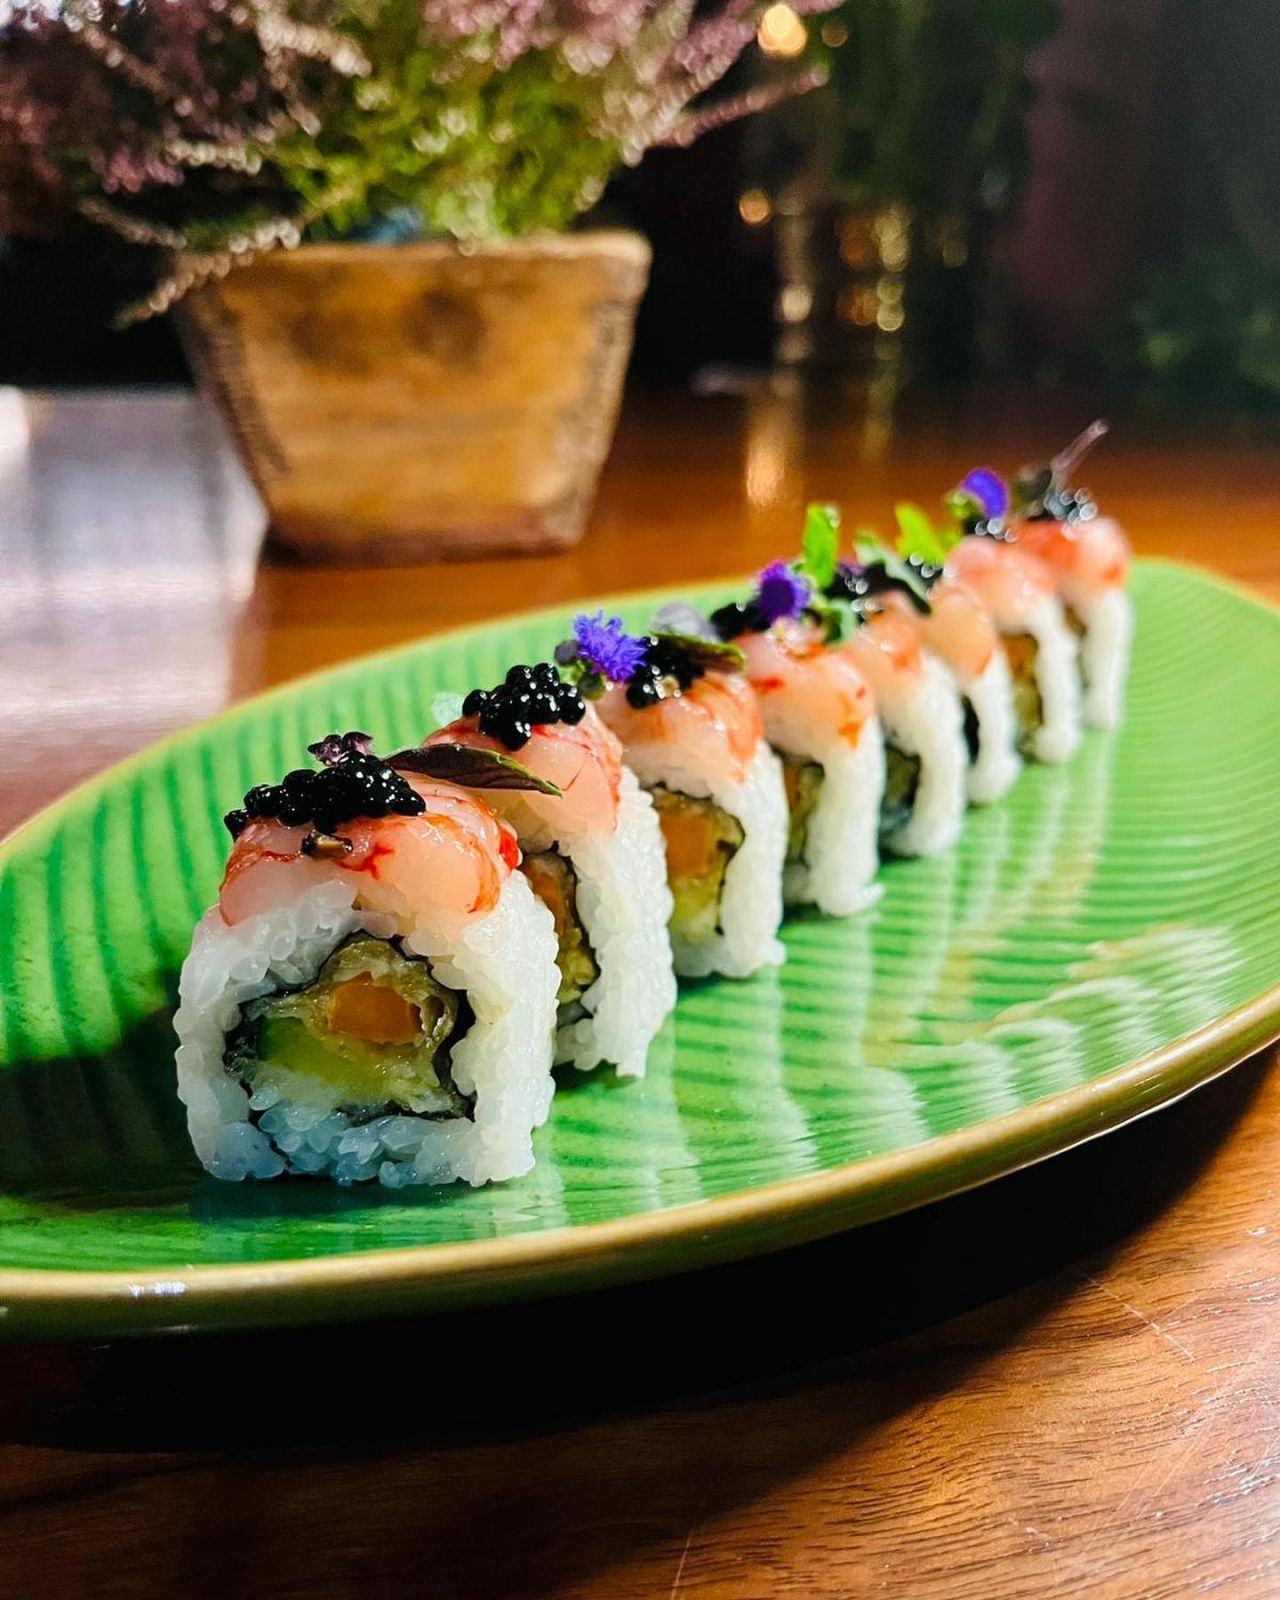 Bonsai Sushi Lounge